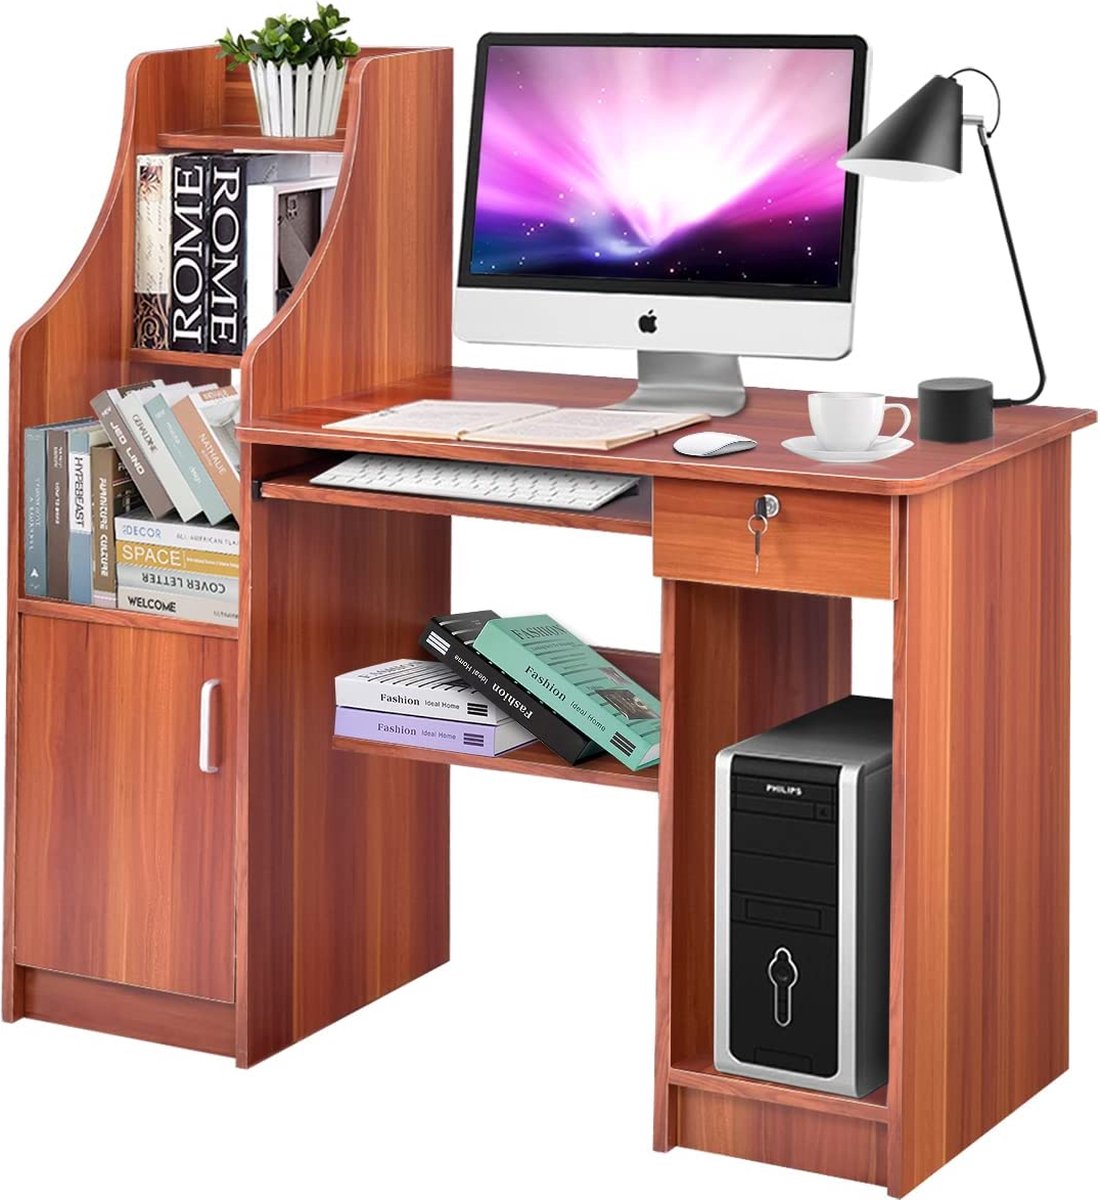 TOPQUALITY computerbureau met boekenplank, houten bureau met opbergvakken en kast, modern werkstationbureau met toetsenbordplank, multifunctionele pc-tafel, werktafel voor studiebureau